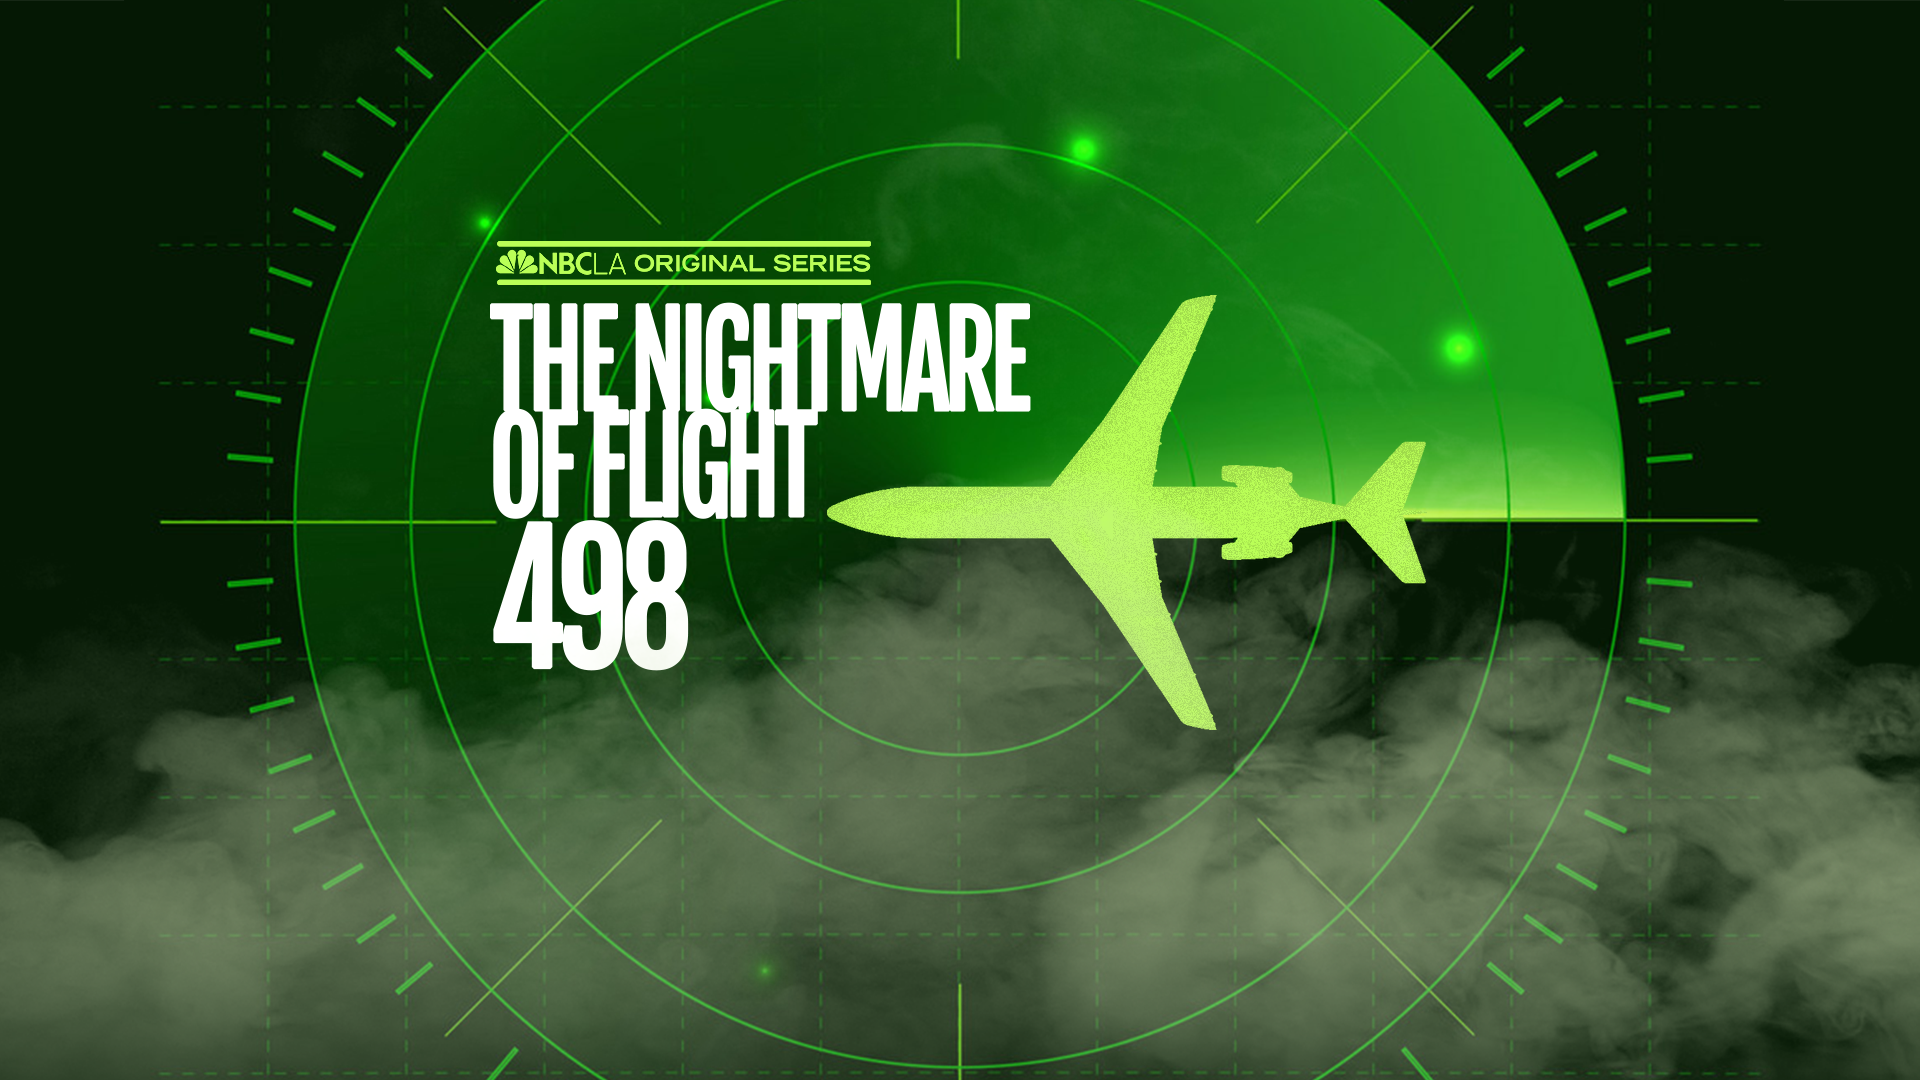 Aeroméxico Flight 498 - Wikipedia